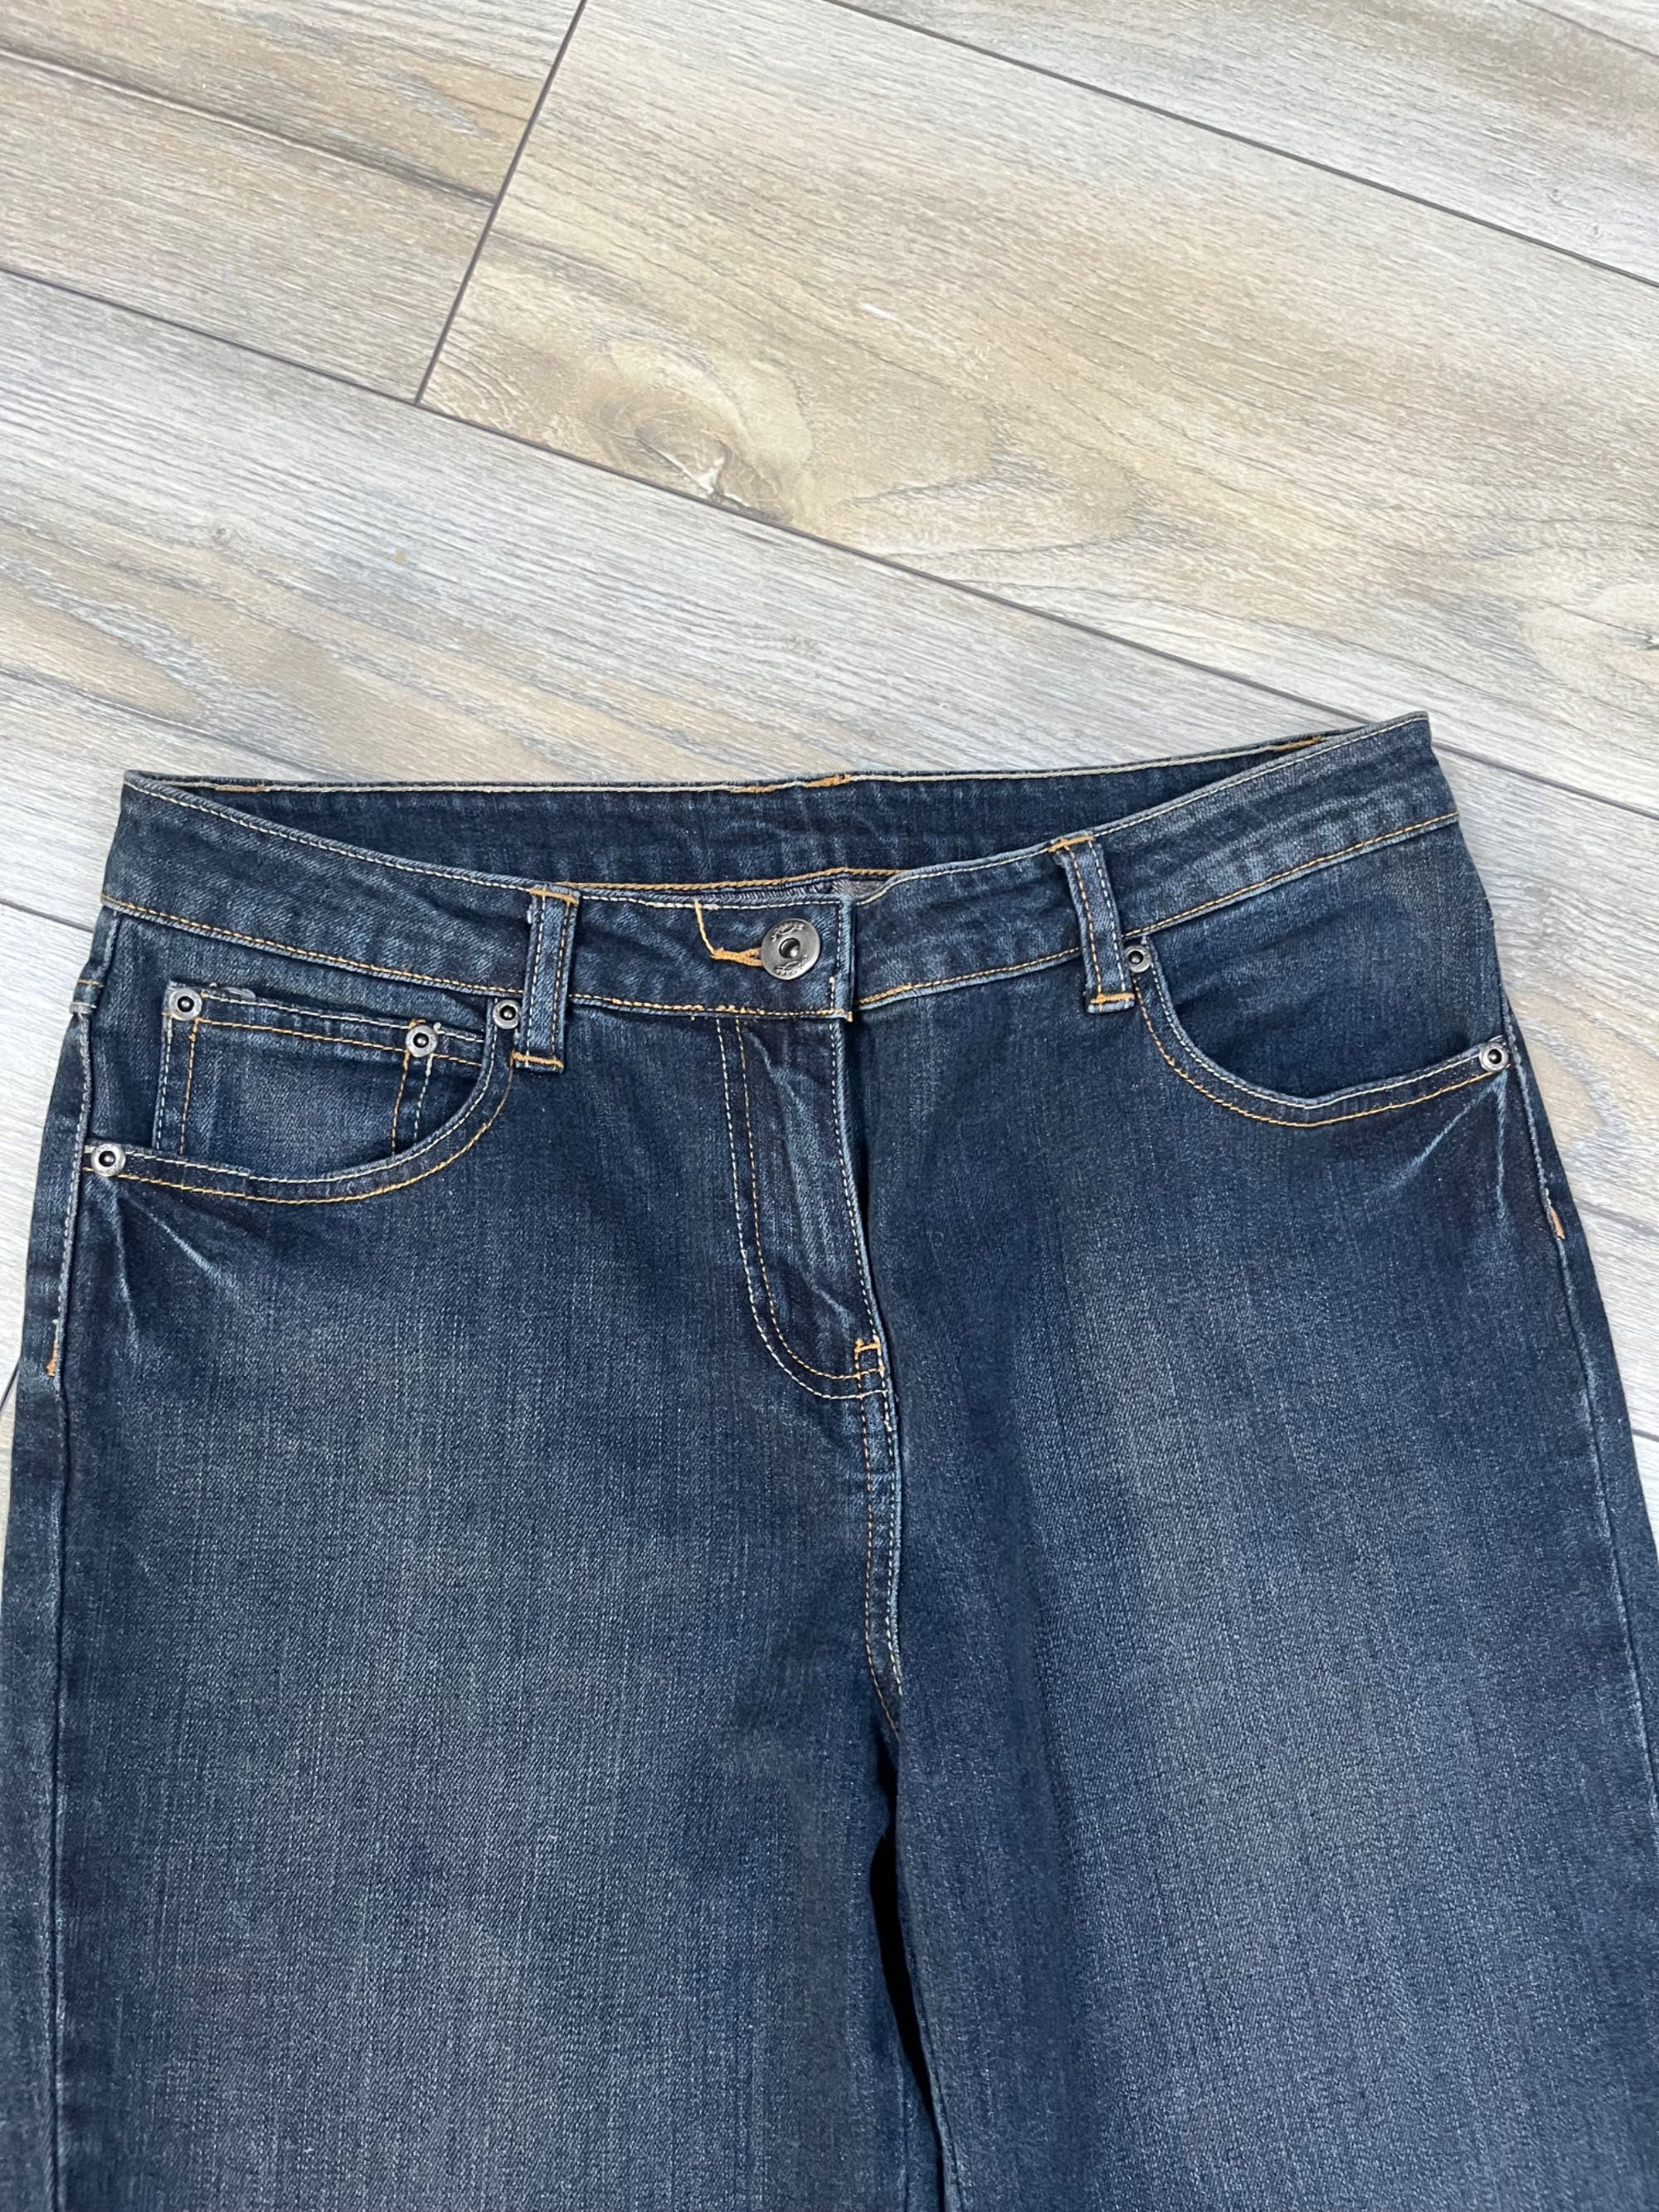 spodnie jeansowe z szerokimi nogawkami S-M